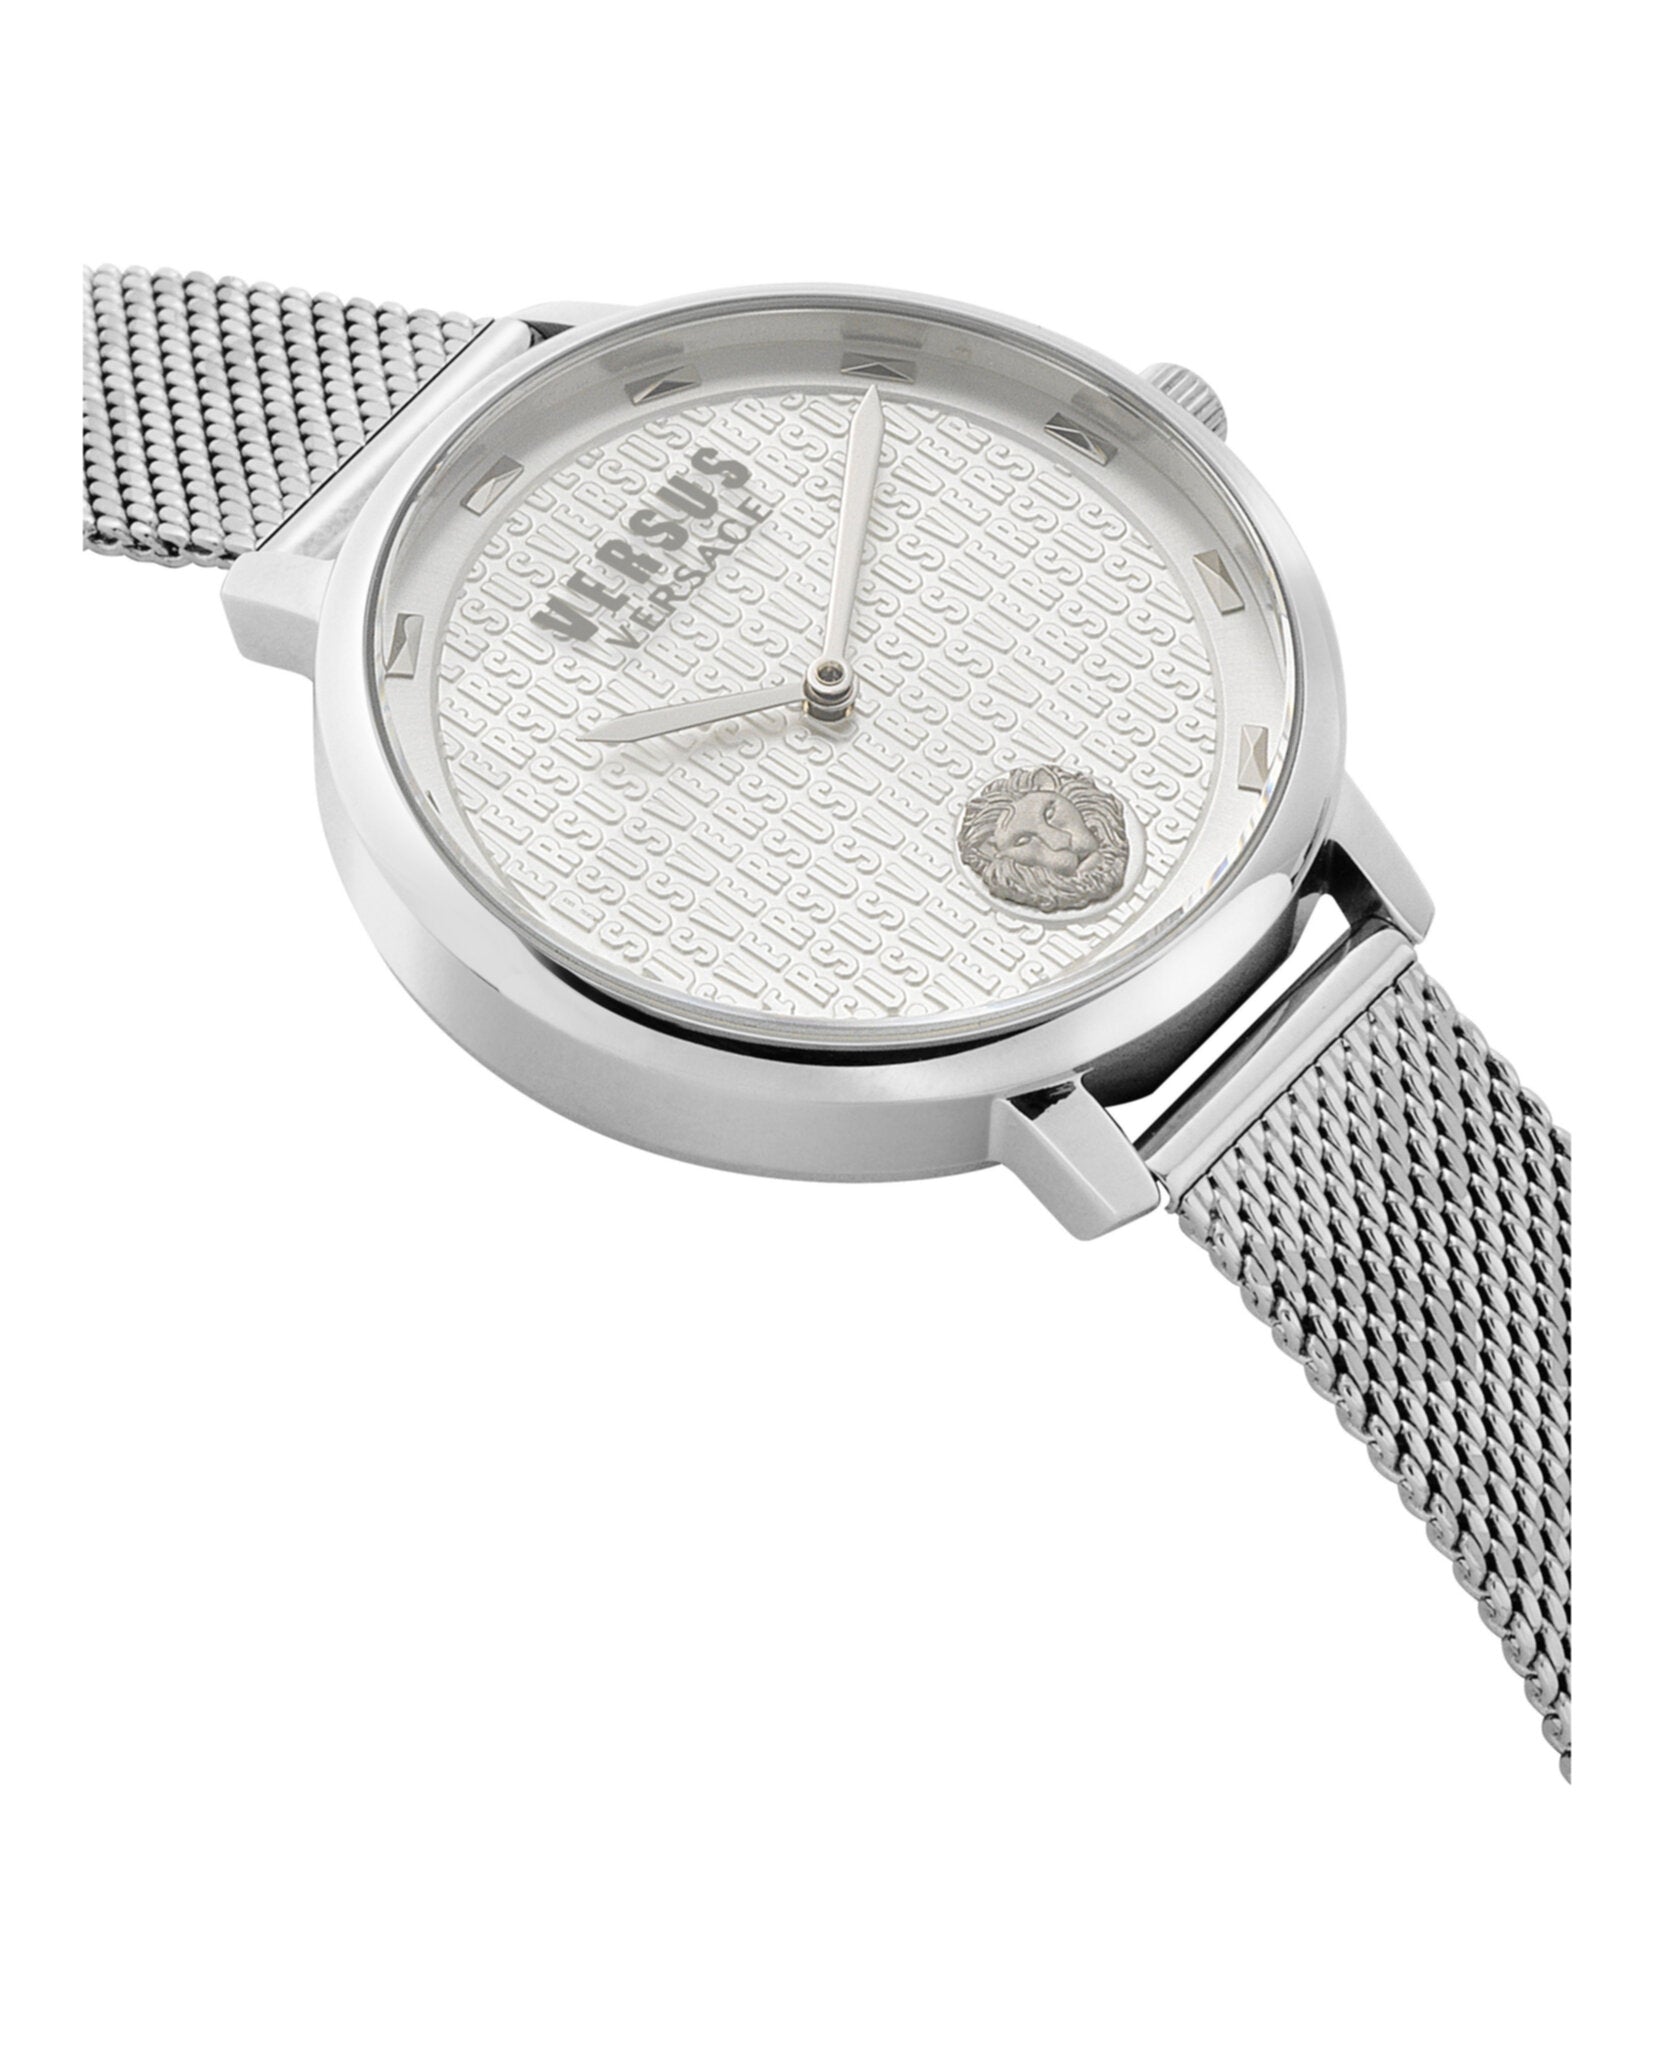 La Villette Bracelet Watch